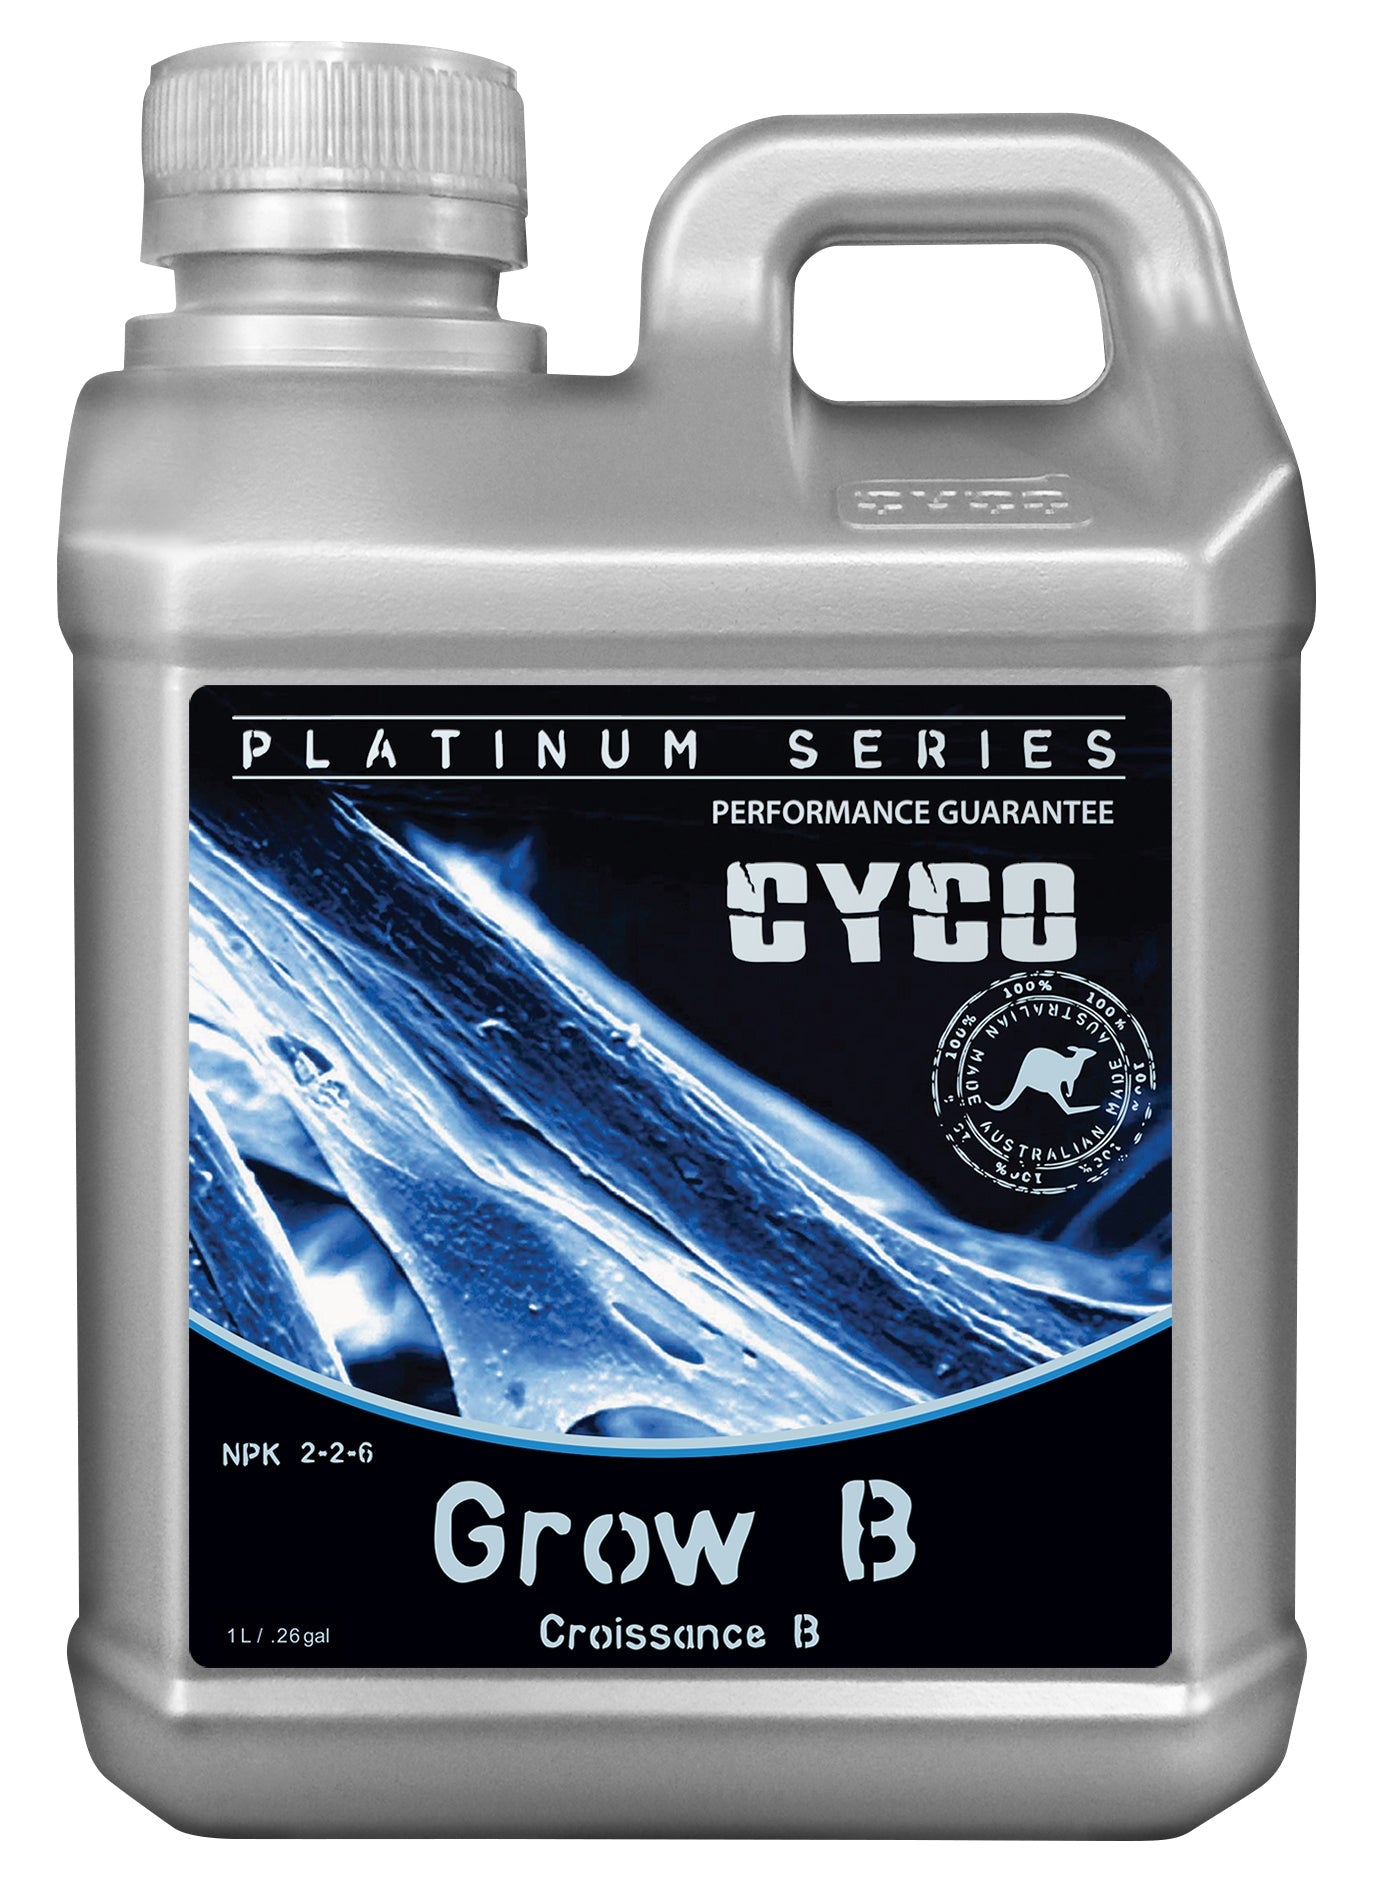 CYCO Grow B - 815 Gardens